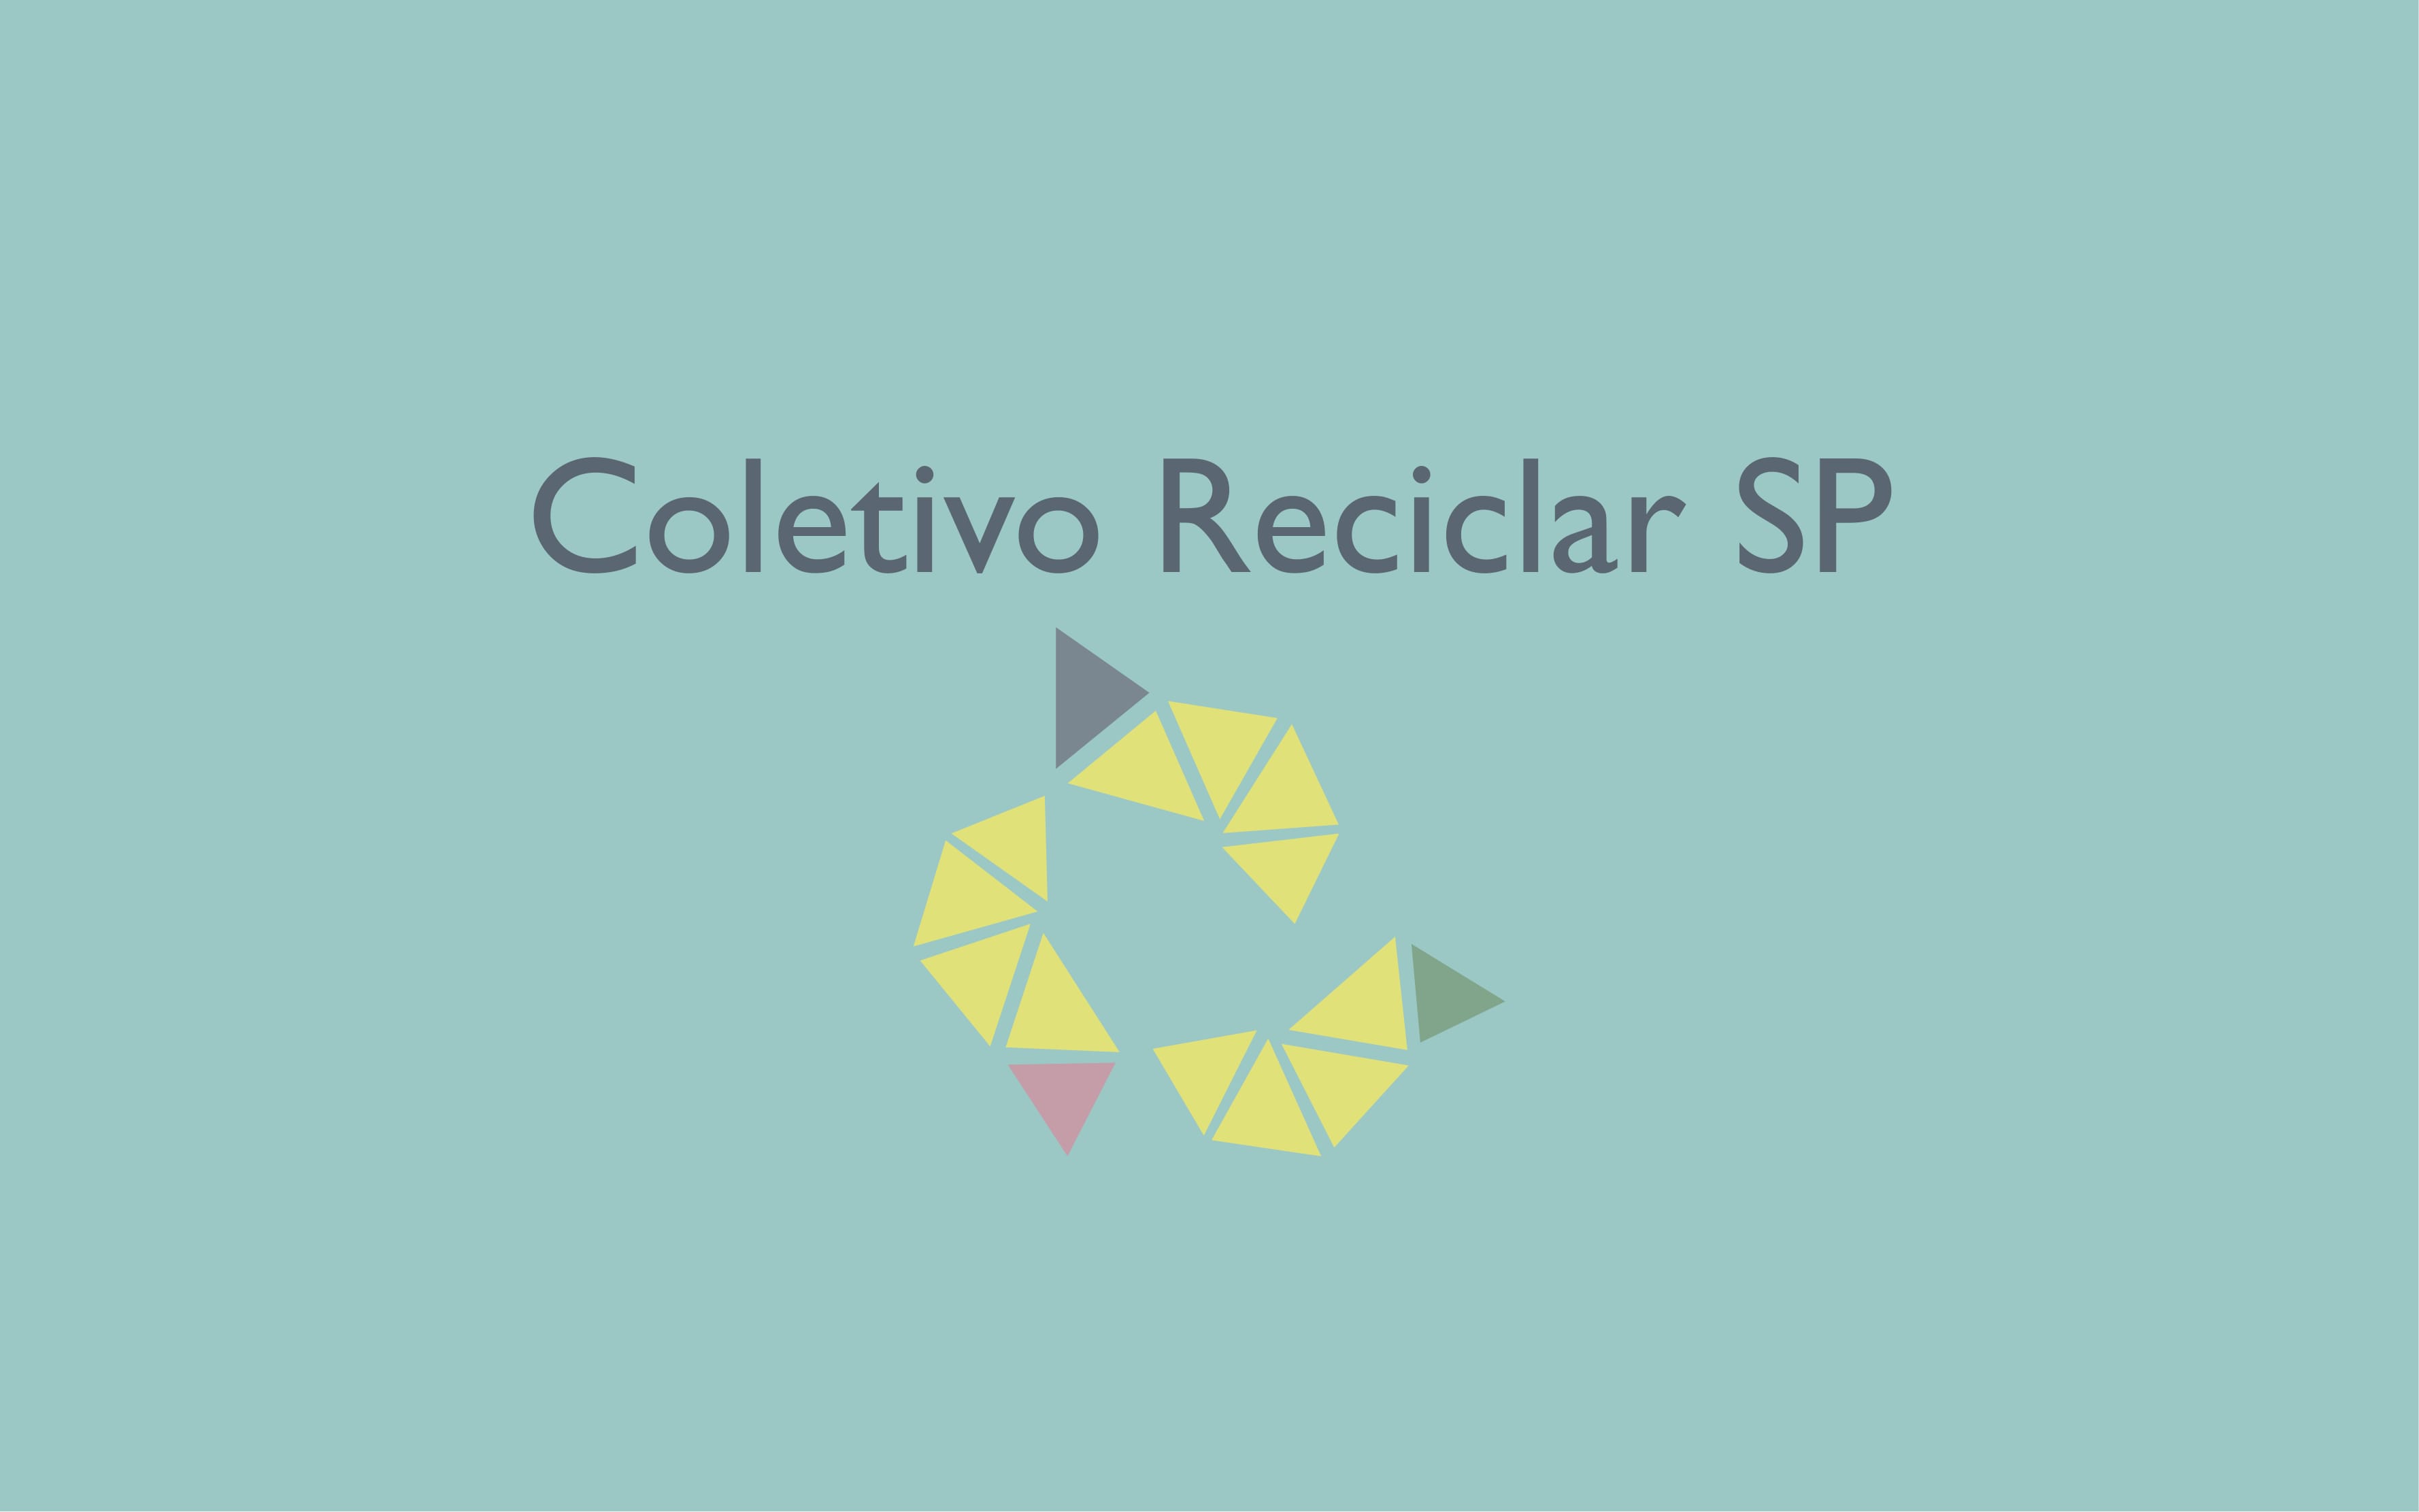 COLETIVO RECICLAR SP